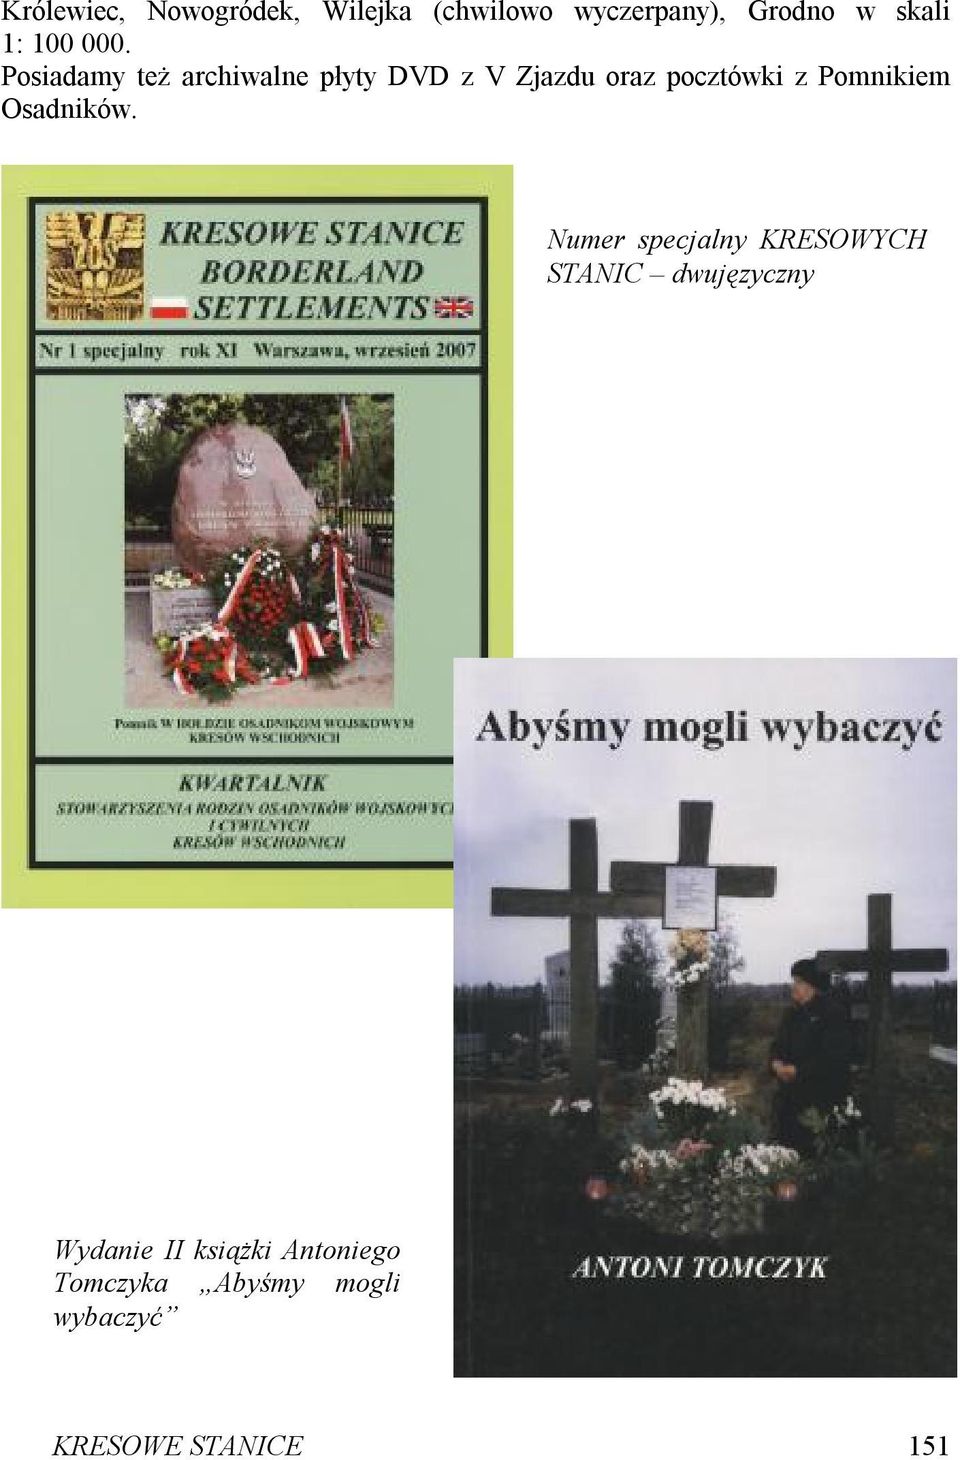 Posiadamy też archiwalne płyty DVD z V Zjazdu oraz pocztówki z Pomnikiem